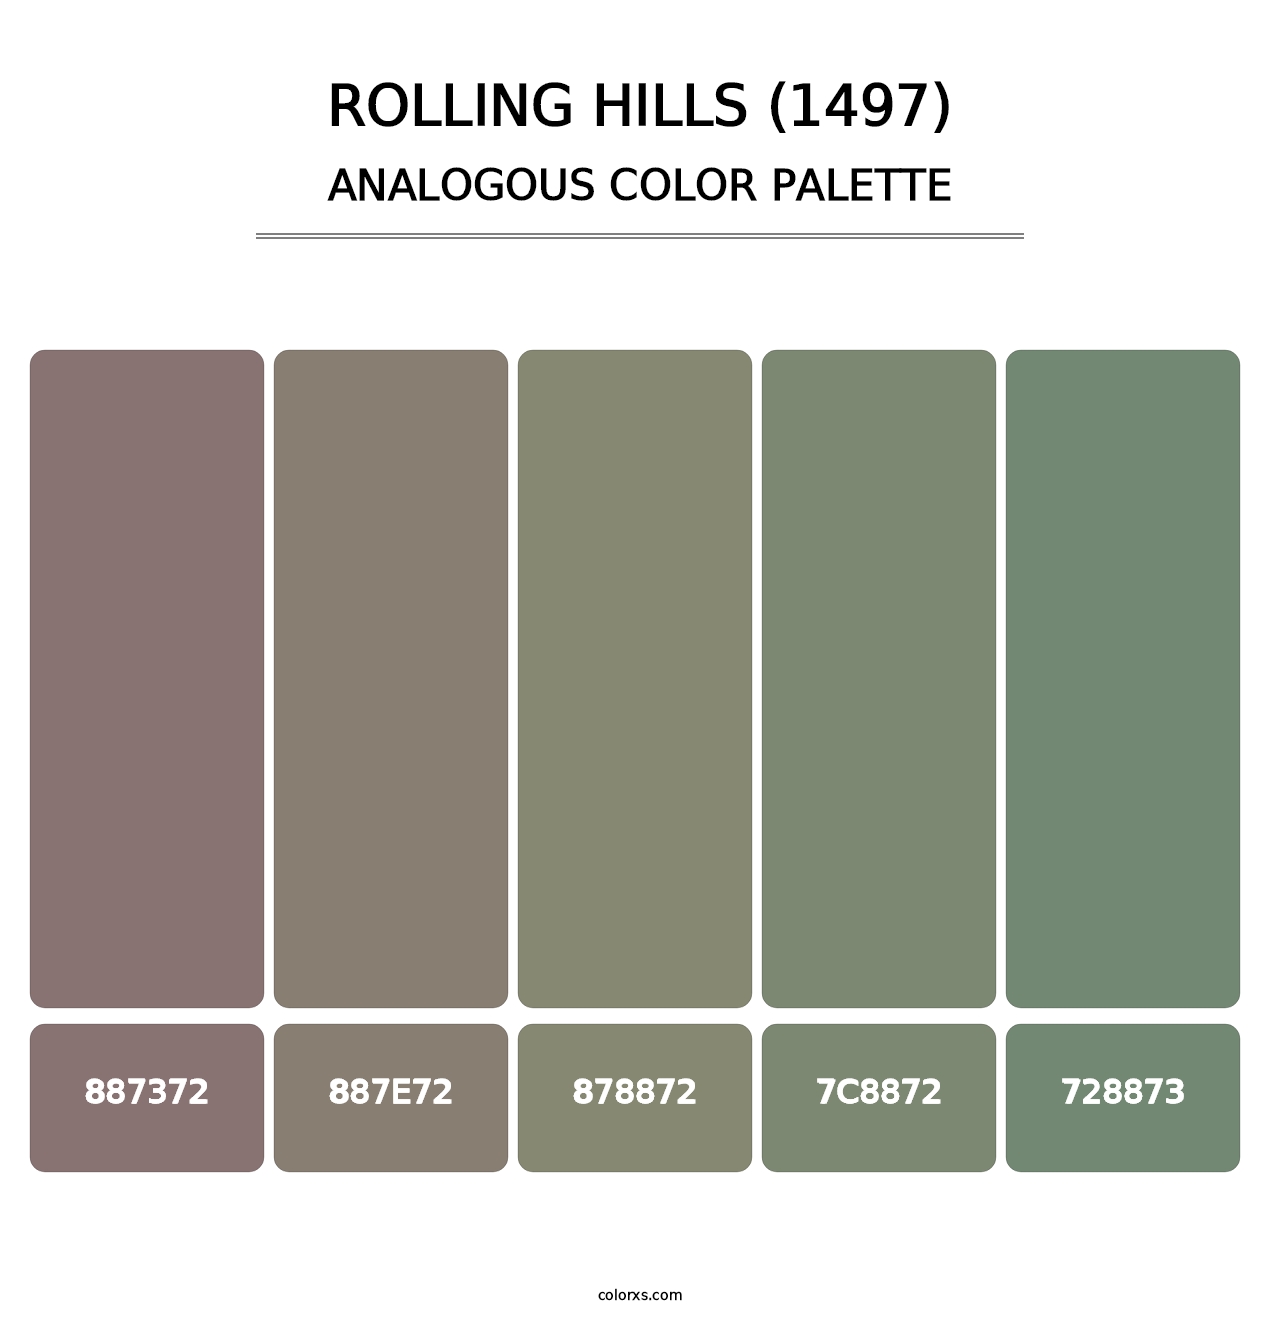 Rolling Hills (1497) - Analogous Color Palette